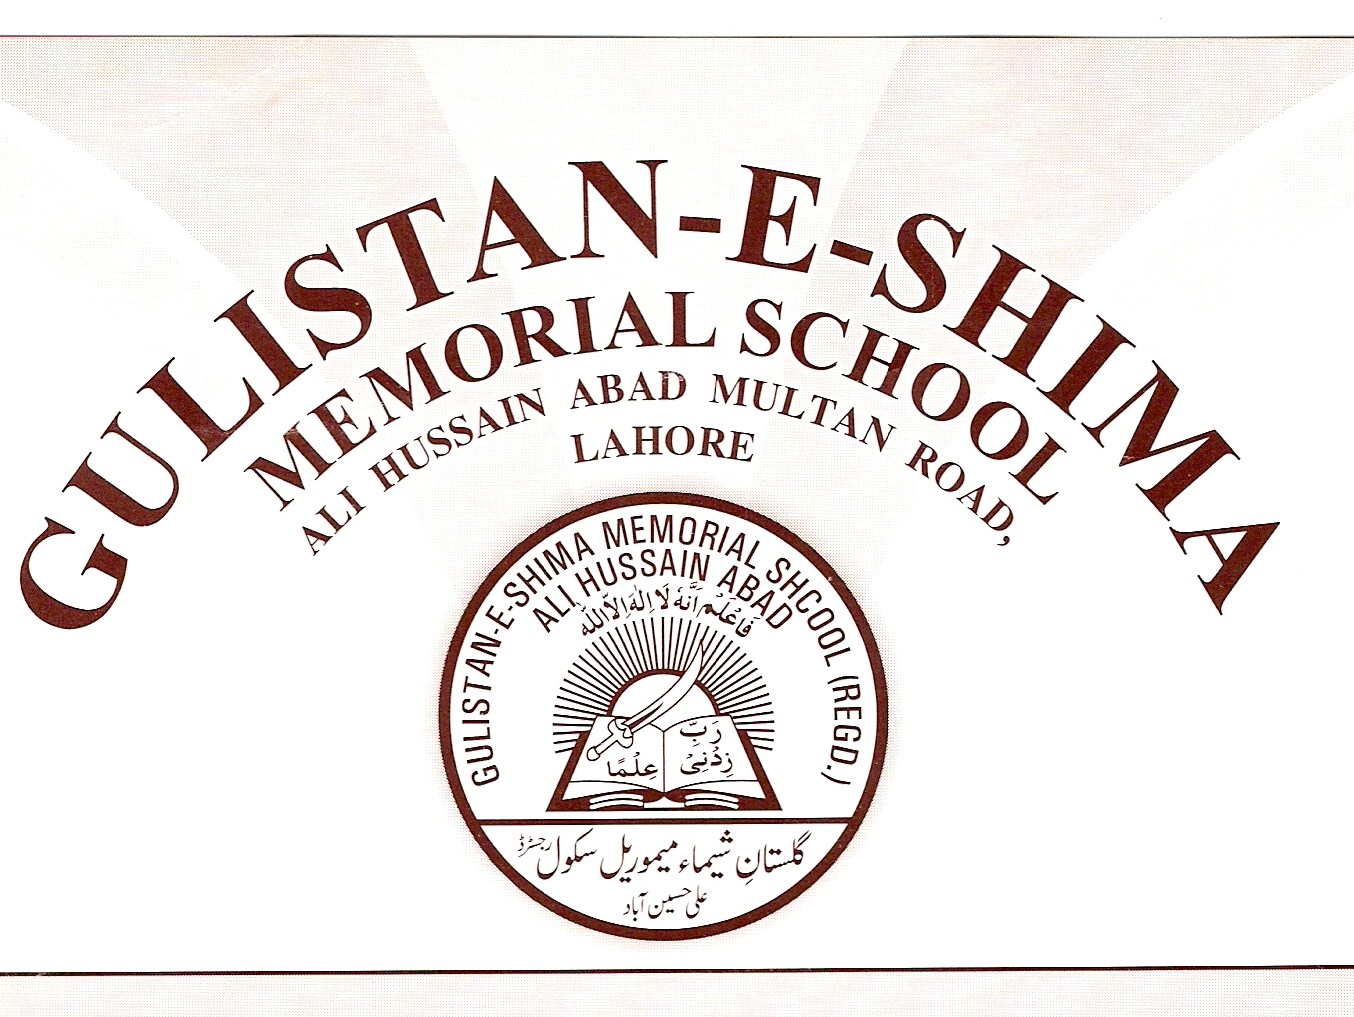 Gulistan-E-Shima
Memorial School
Ali Hussain Abad Multan Road
Lahore Pakistan
CLICK FOR FULL SIZE PICTURE
(1354w x 1017h)